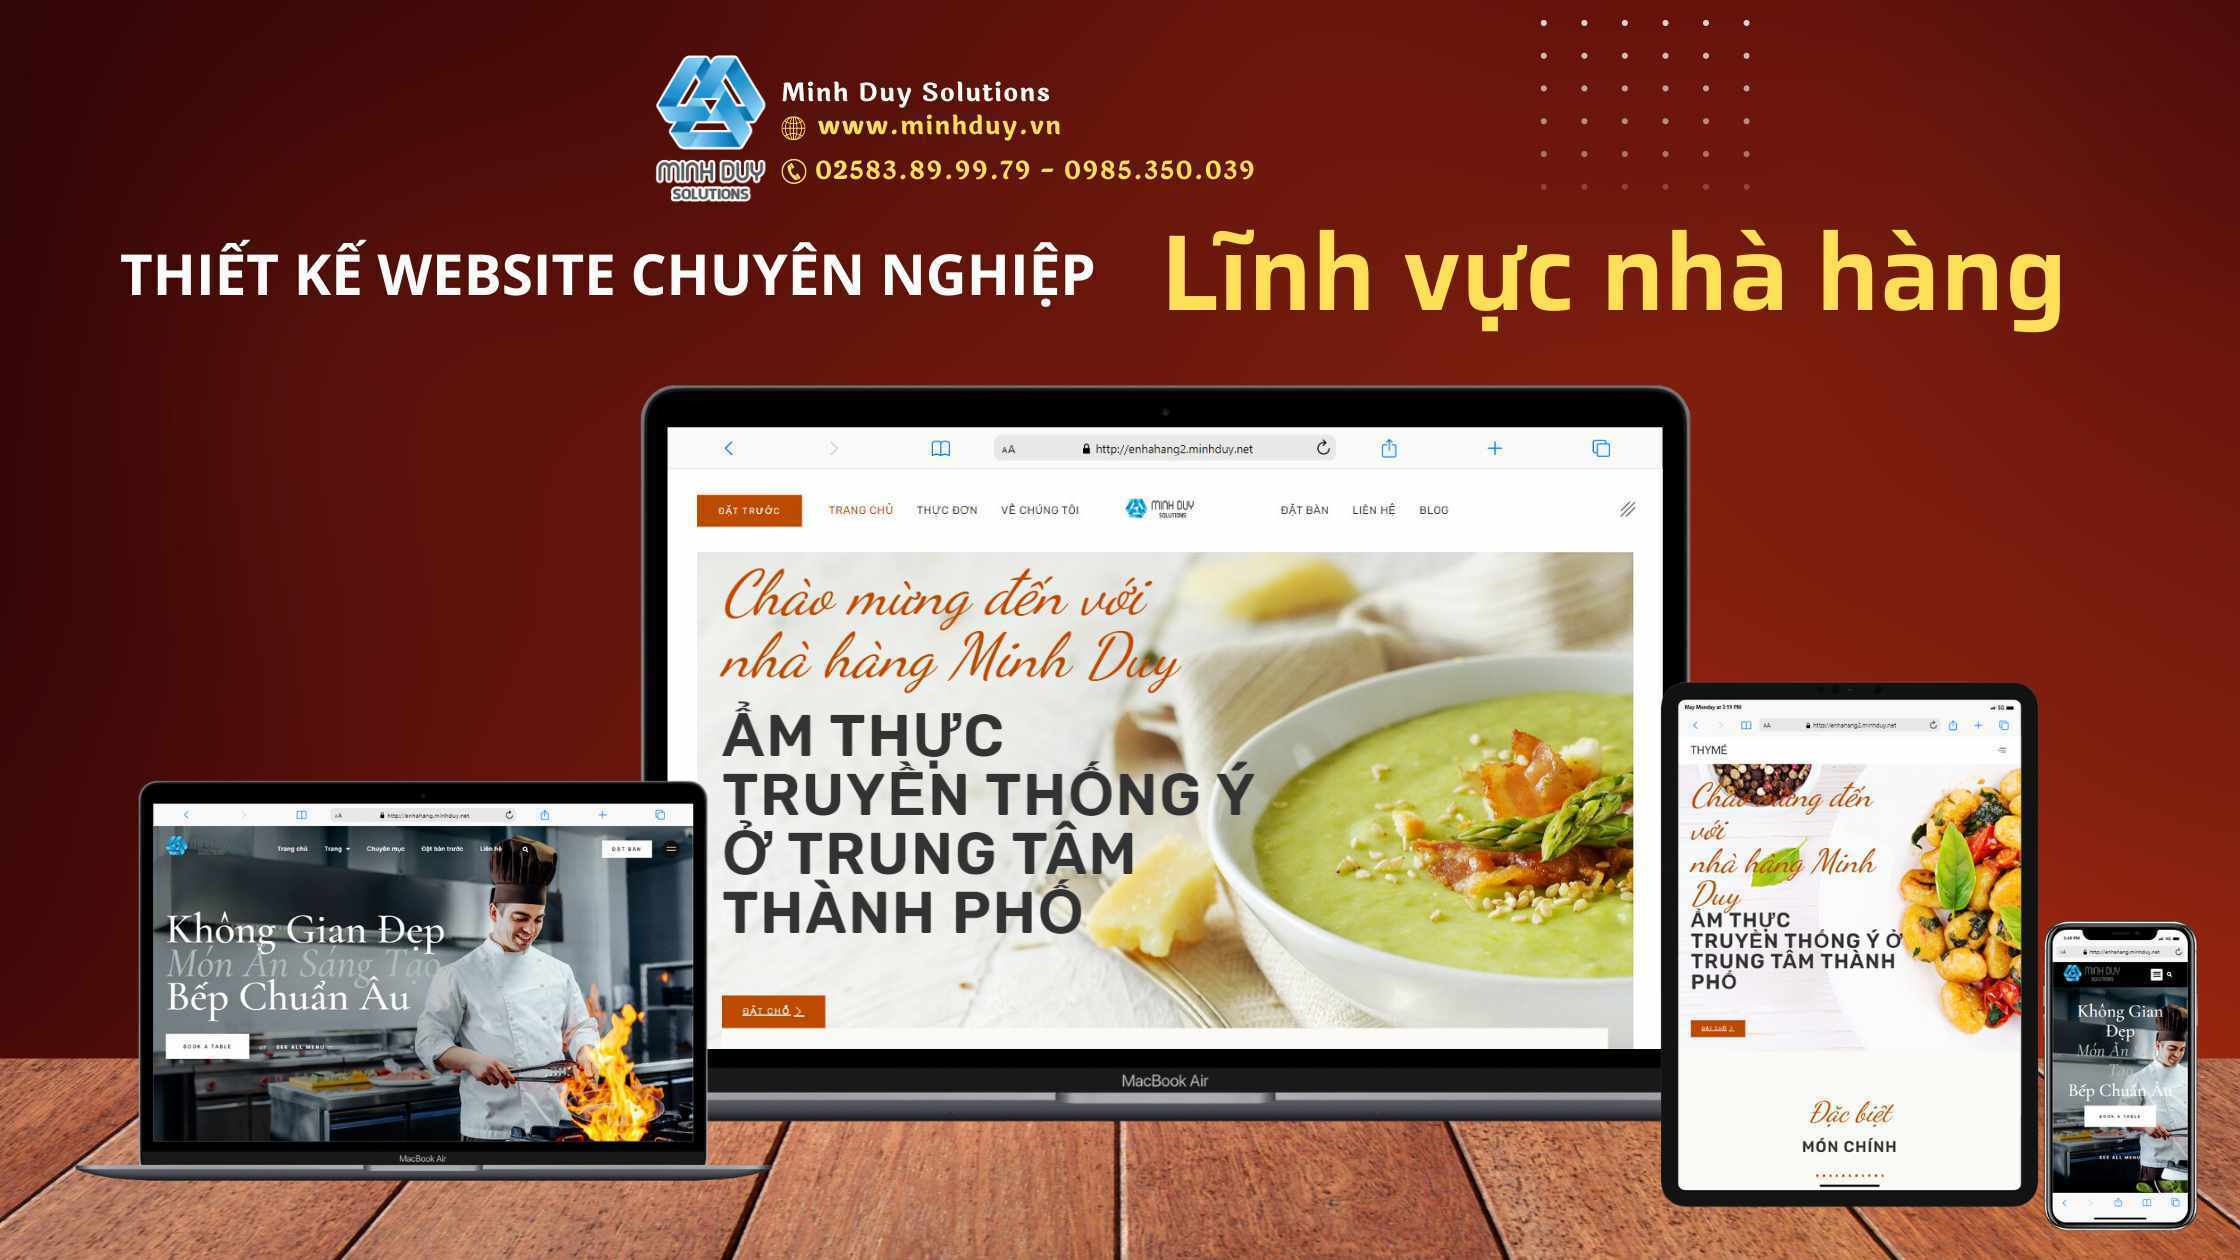 Thiết kế website nhà hàng, lĩnh vực F&B chuyên nghiệp - chuẩn SEO